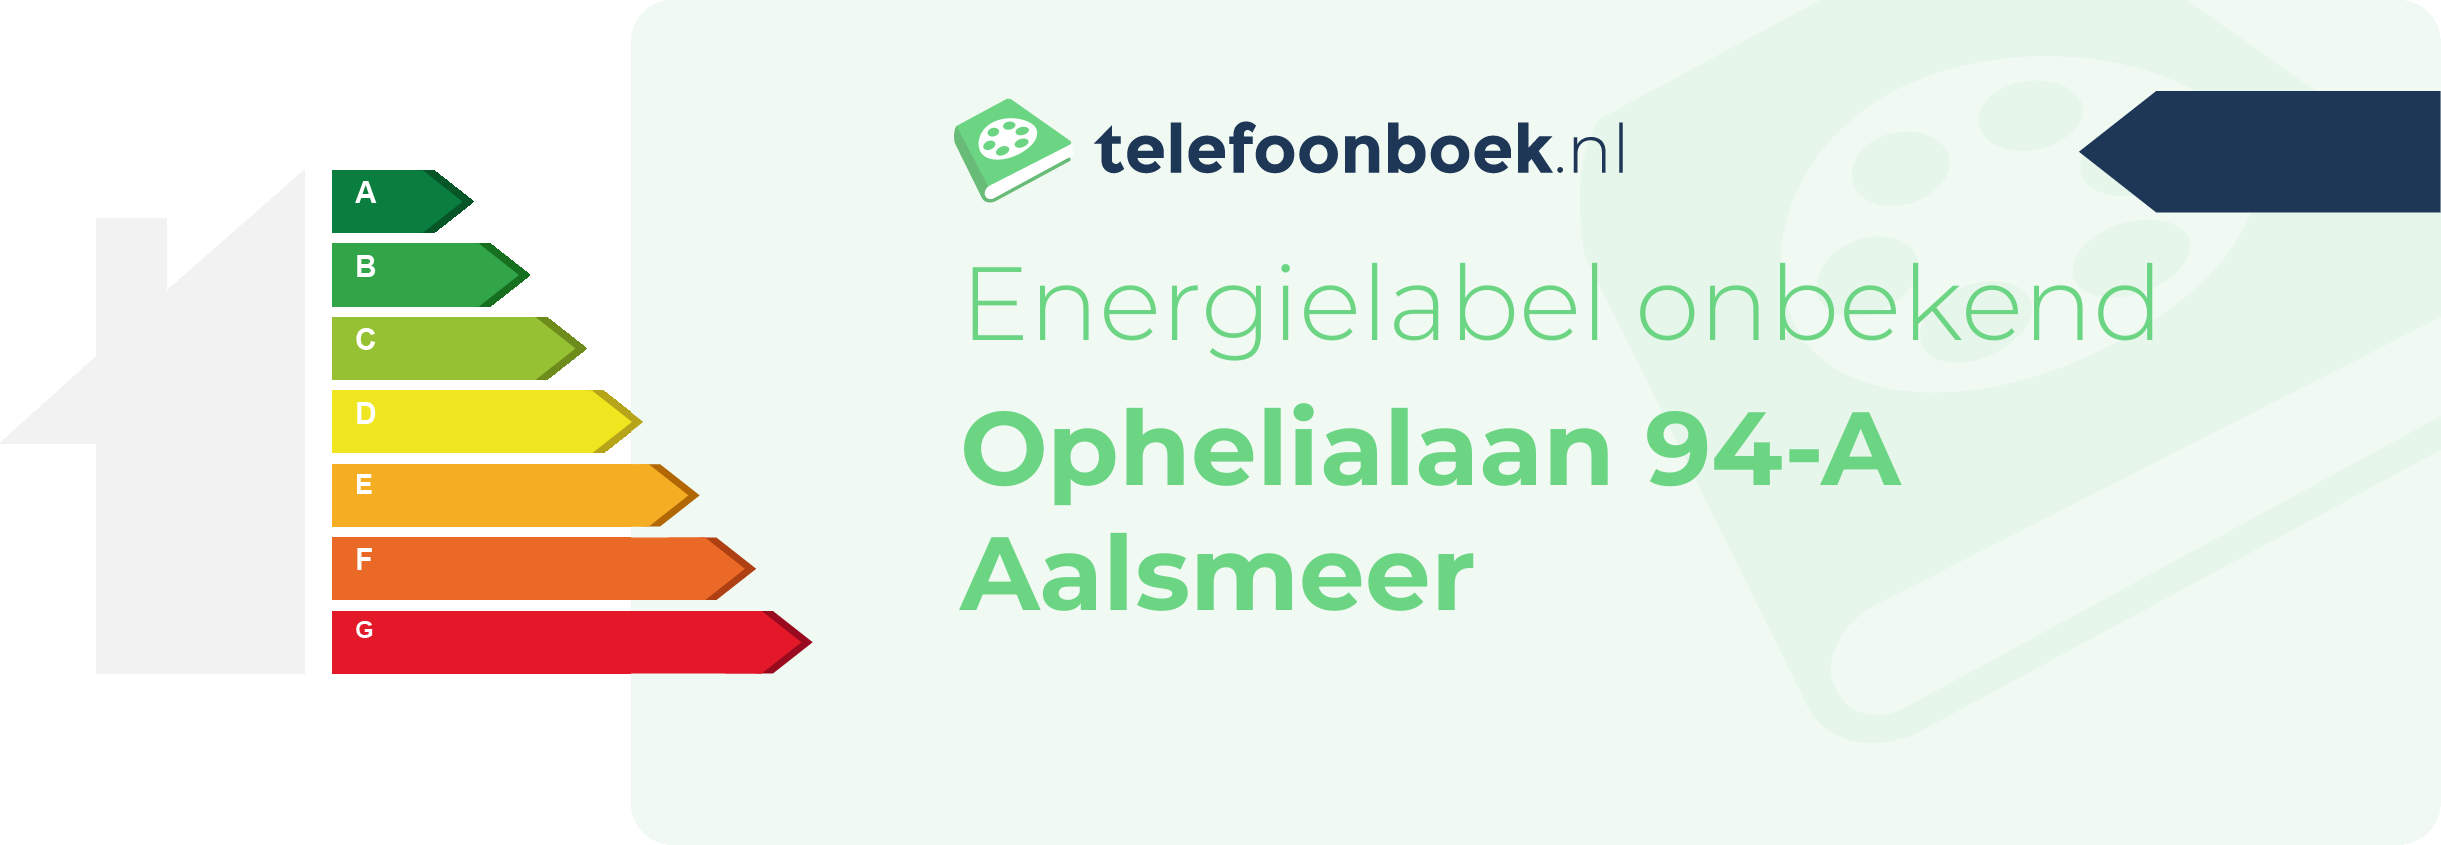 Energielabel Ophelialaan 94-A Aalsmeer